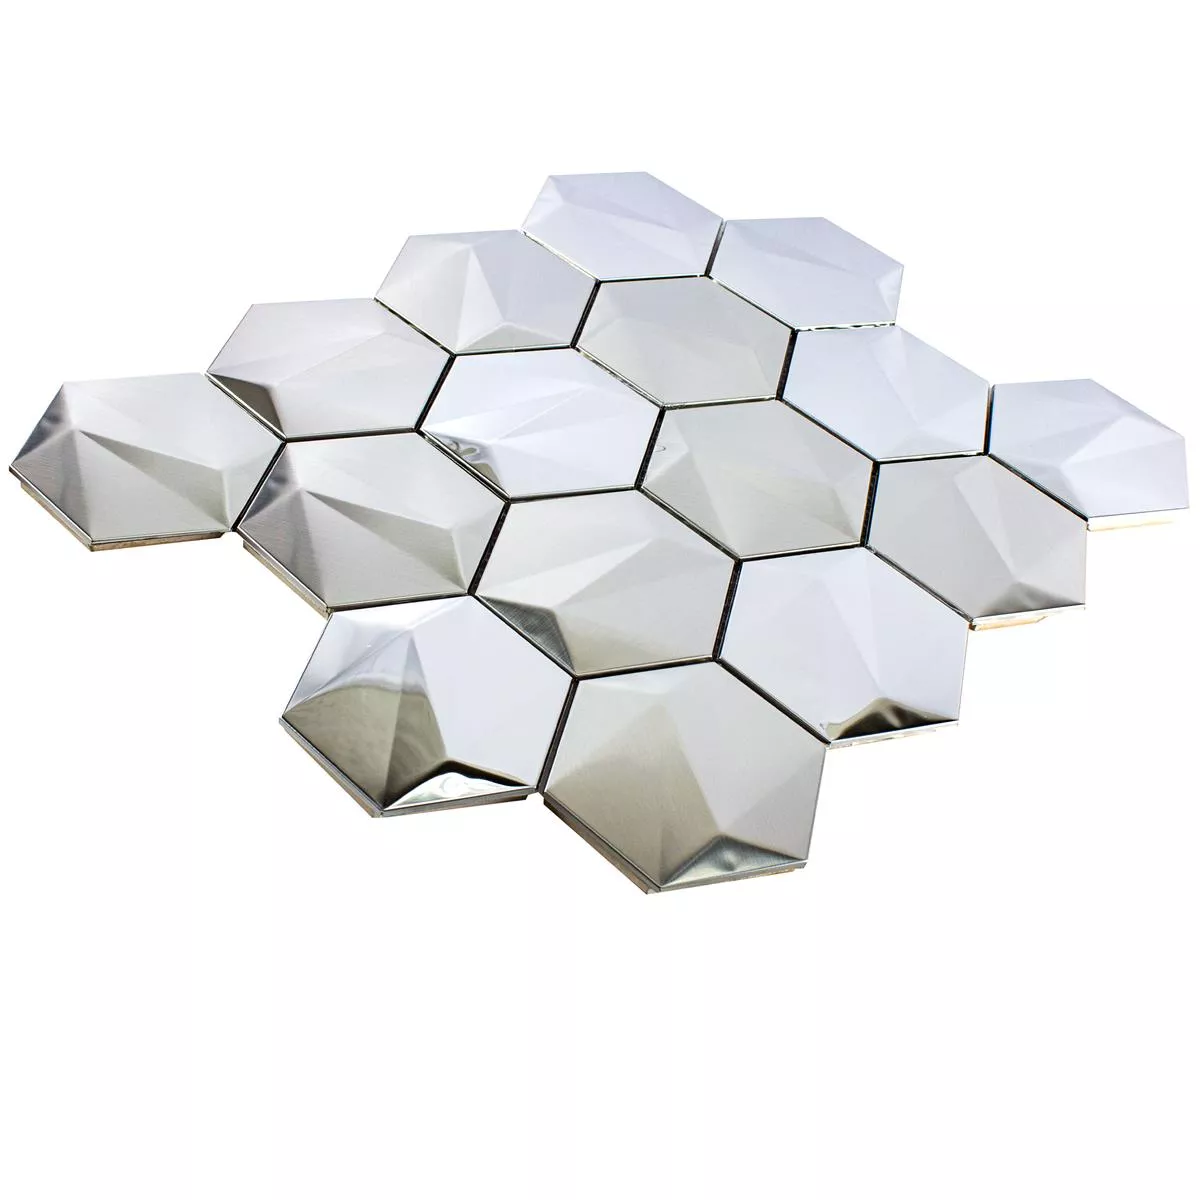 Muestra Acero Inoxidable Azulejos De Mosaico Durango Hexagonales 3D Plateado